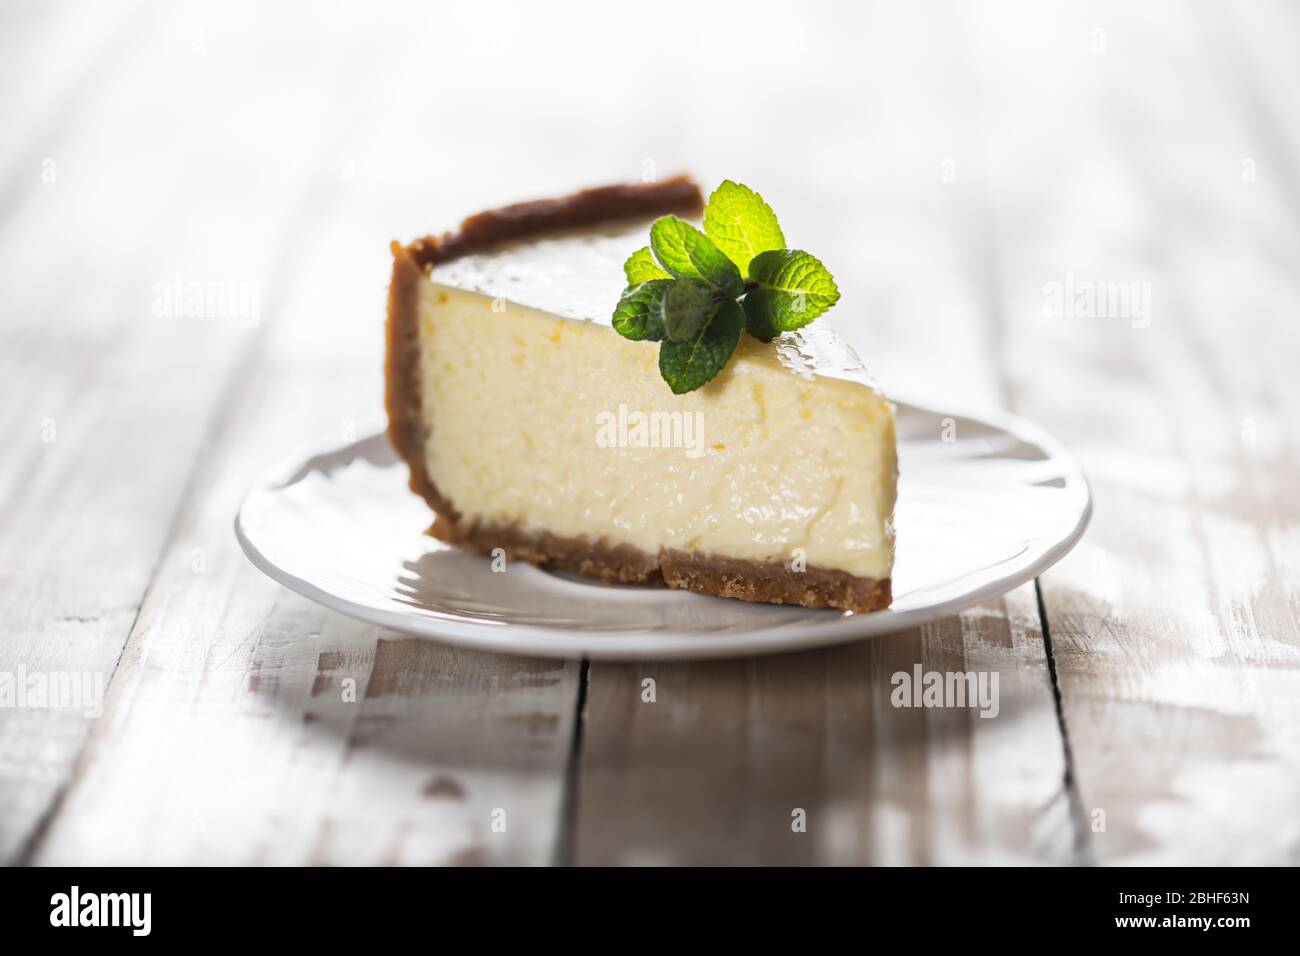 Tranche de cheesecake New York classique avec une branche de menthe sur une plaque sur une table en bois. Le concept de la boulangerie et des desserts aux gâteaux sucrés Banque D'Images